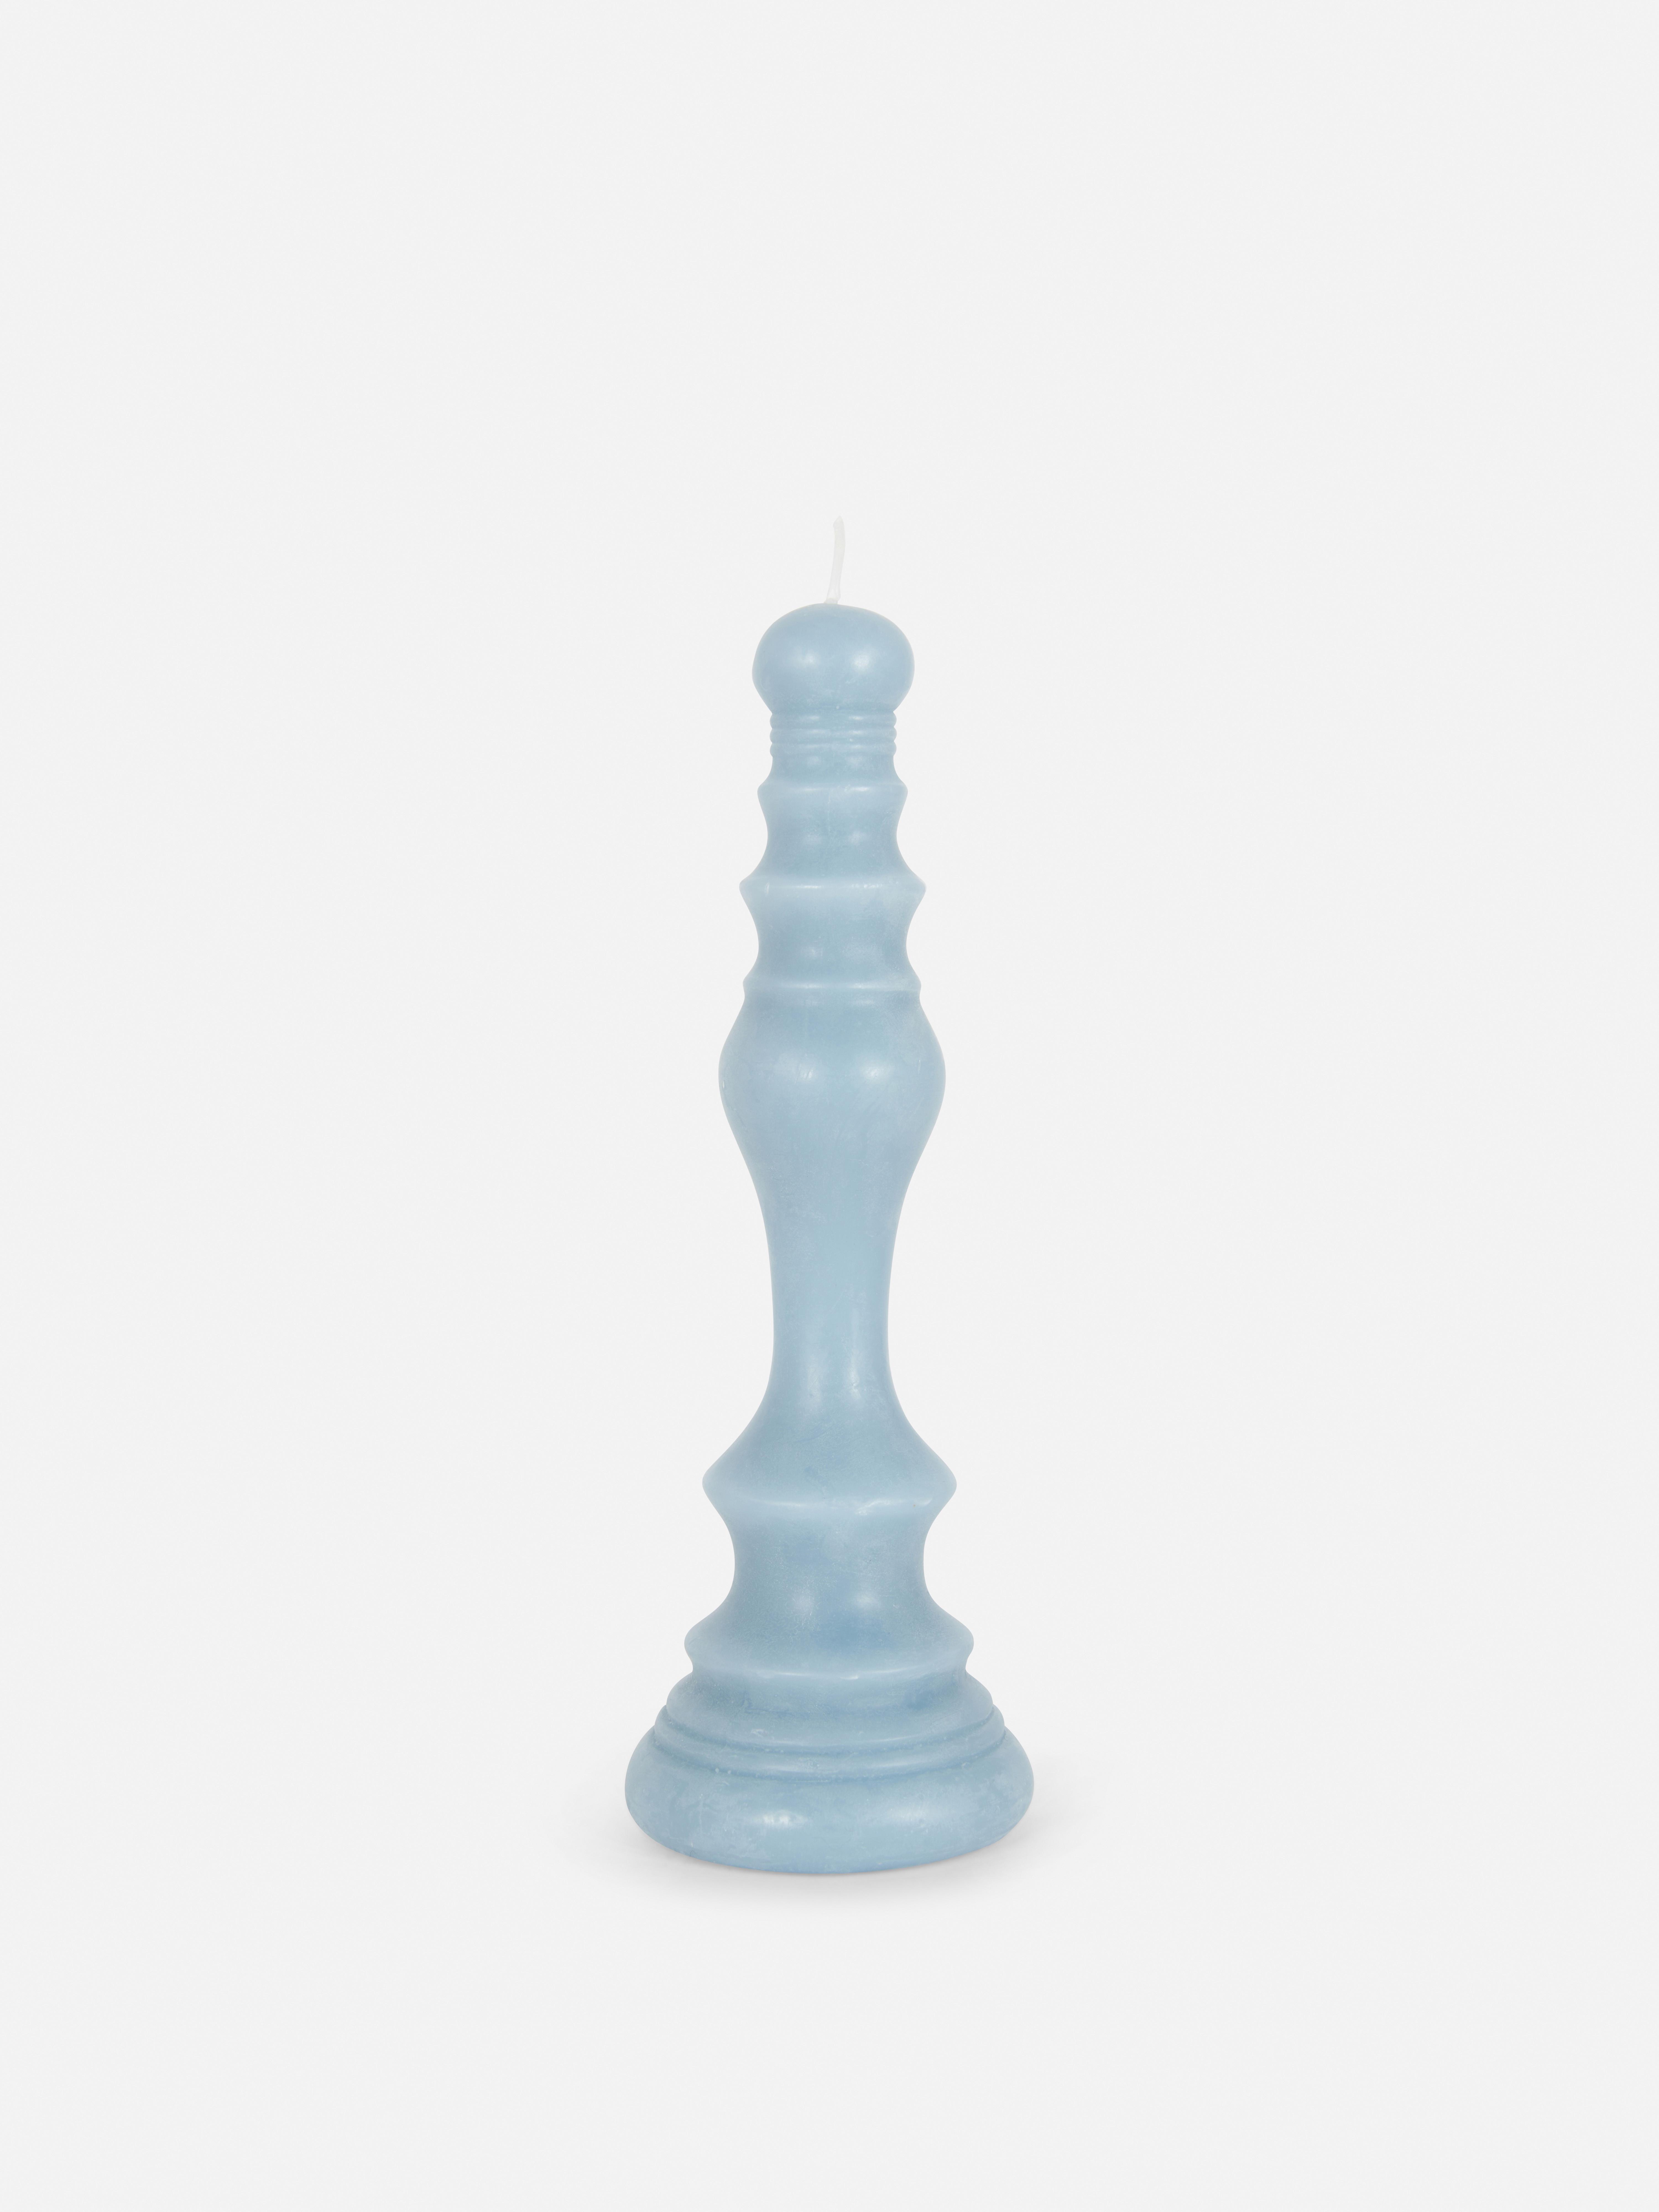 Candela pedina degli scacchi